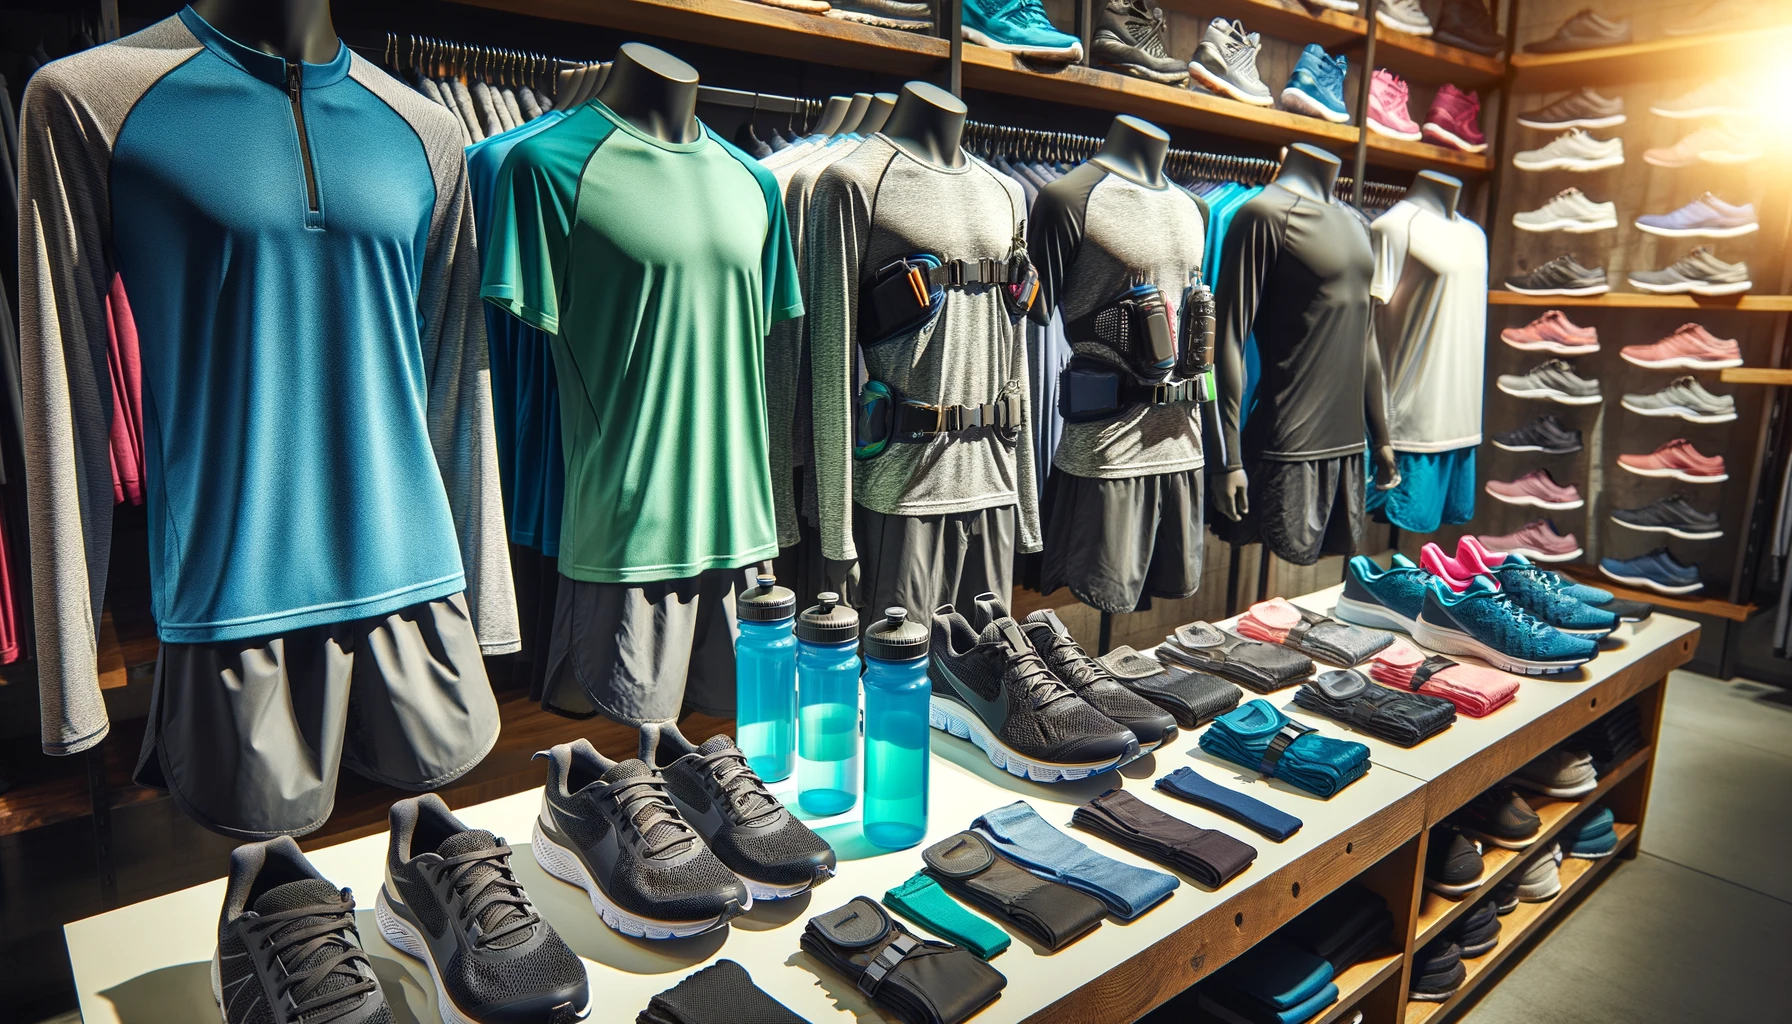 Foto einer Reihe von Laufbekleidung, die ordentlich in einem Regal ausgestellt ist. Dazu gehören feuchtigkeitsableitende Shirts, Shorts, Laufschuhe und Trinkgürtel.